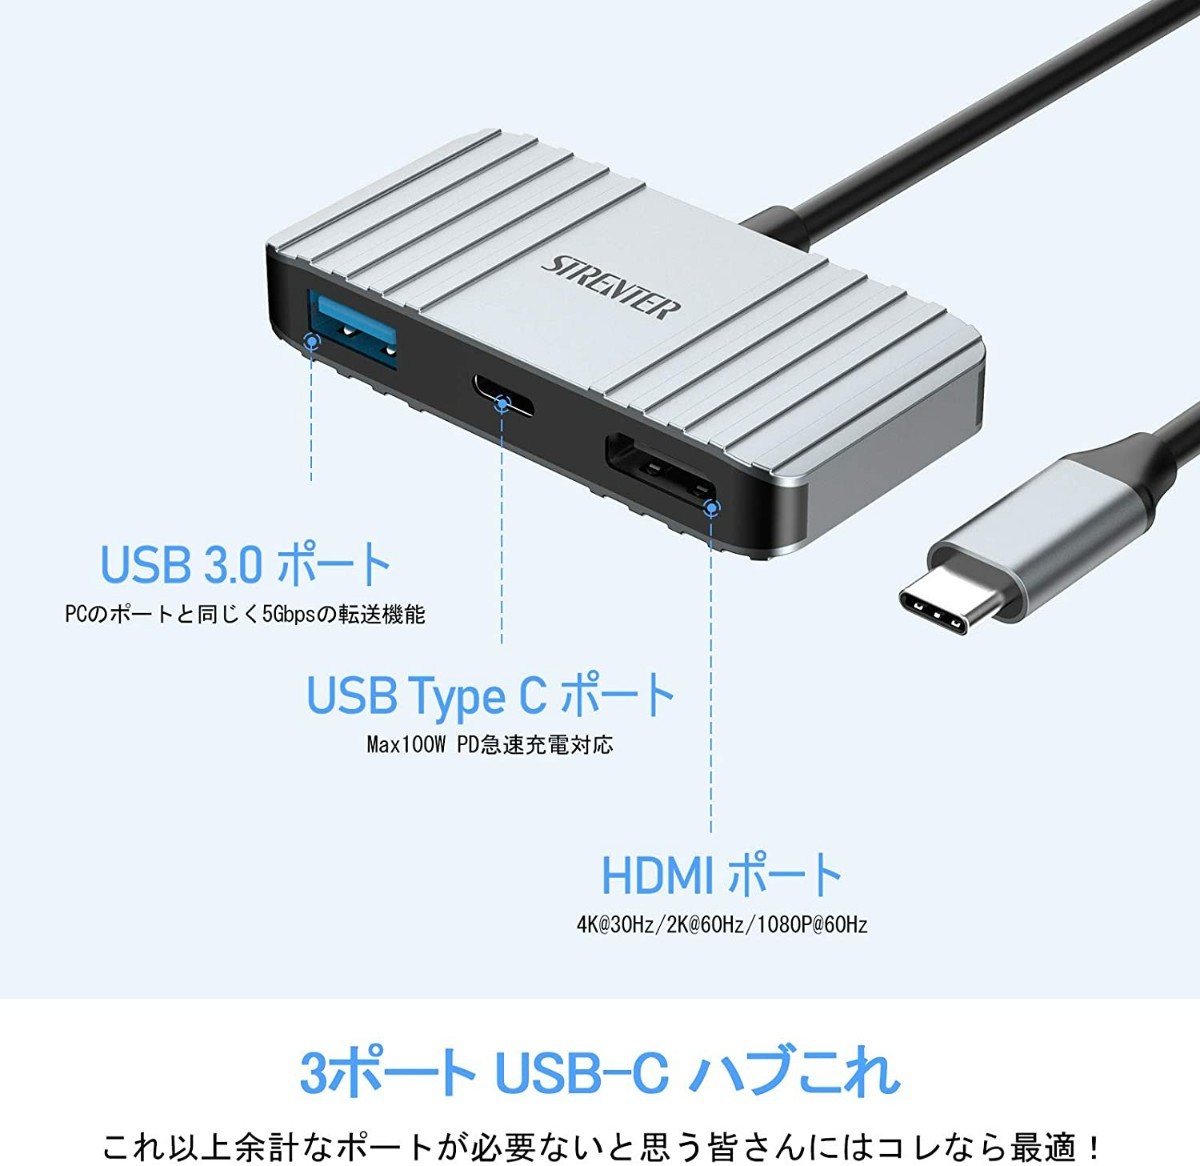 新品 USB Type C HDMI 変換 アダプタ  3-IN-1 4K HDMIポート USB 3.0超高速ポート